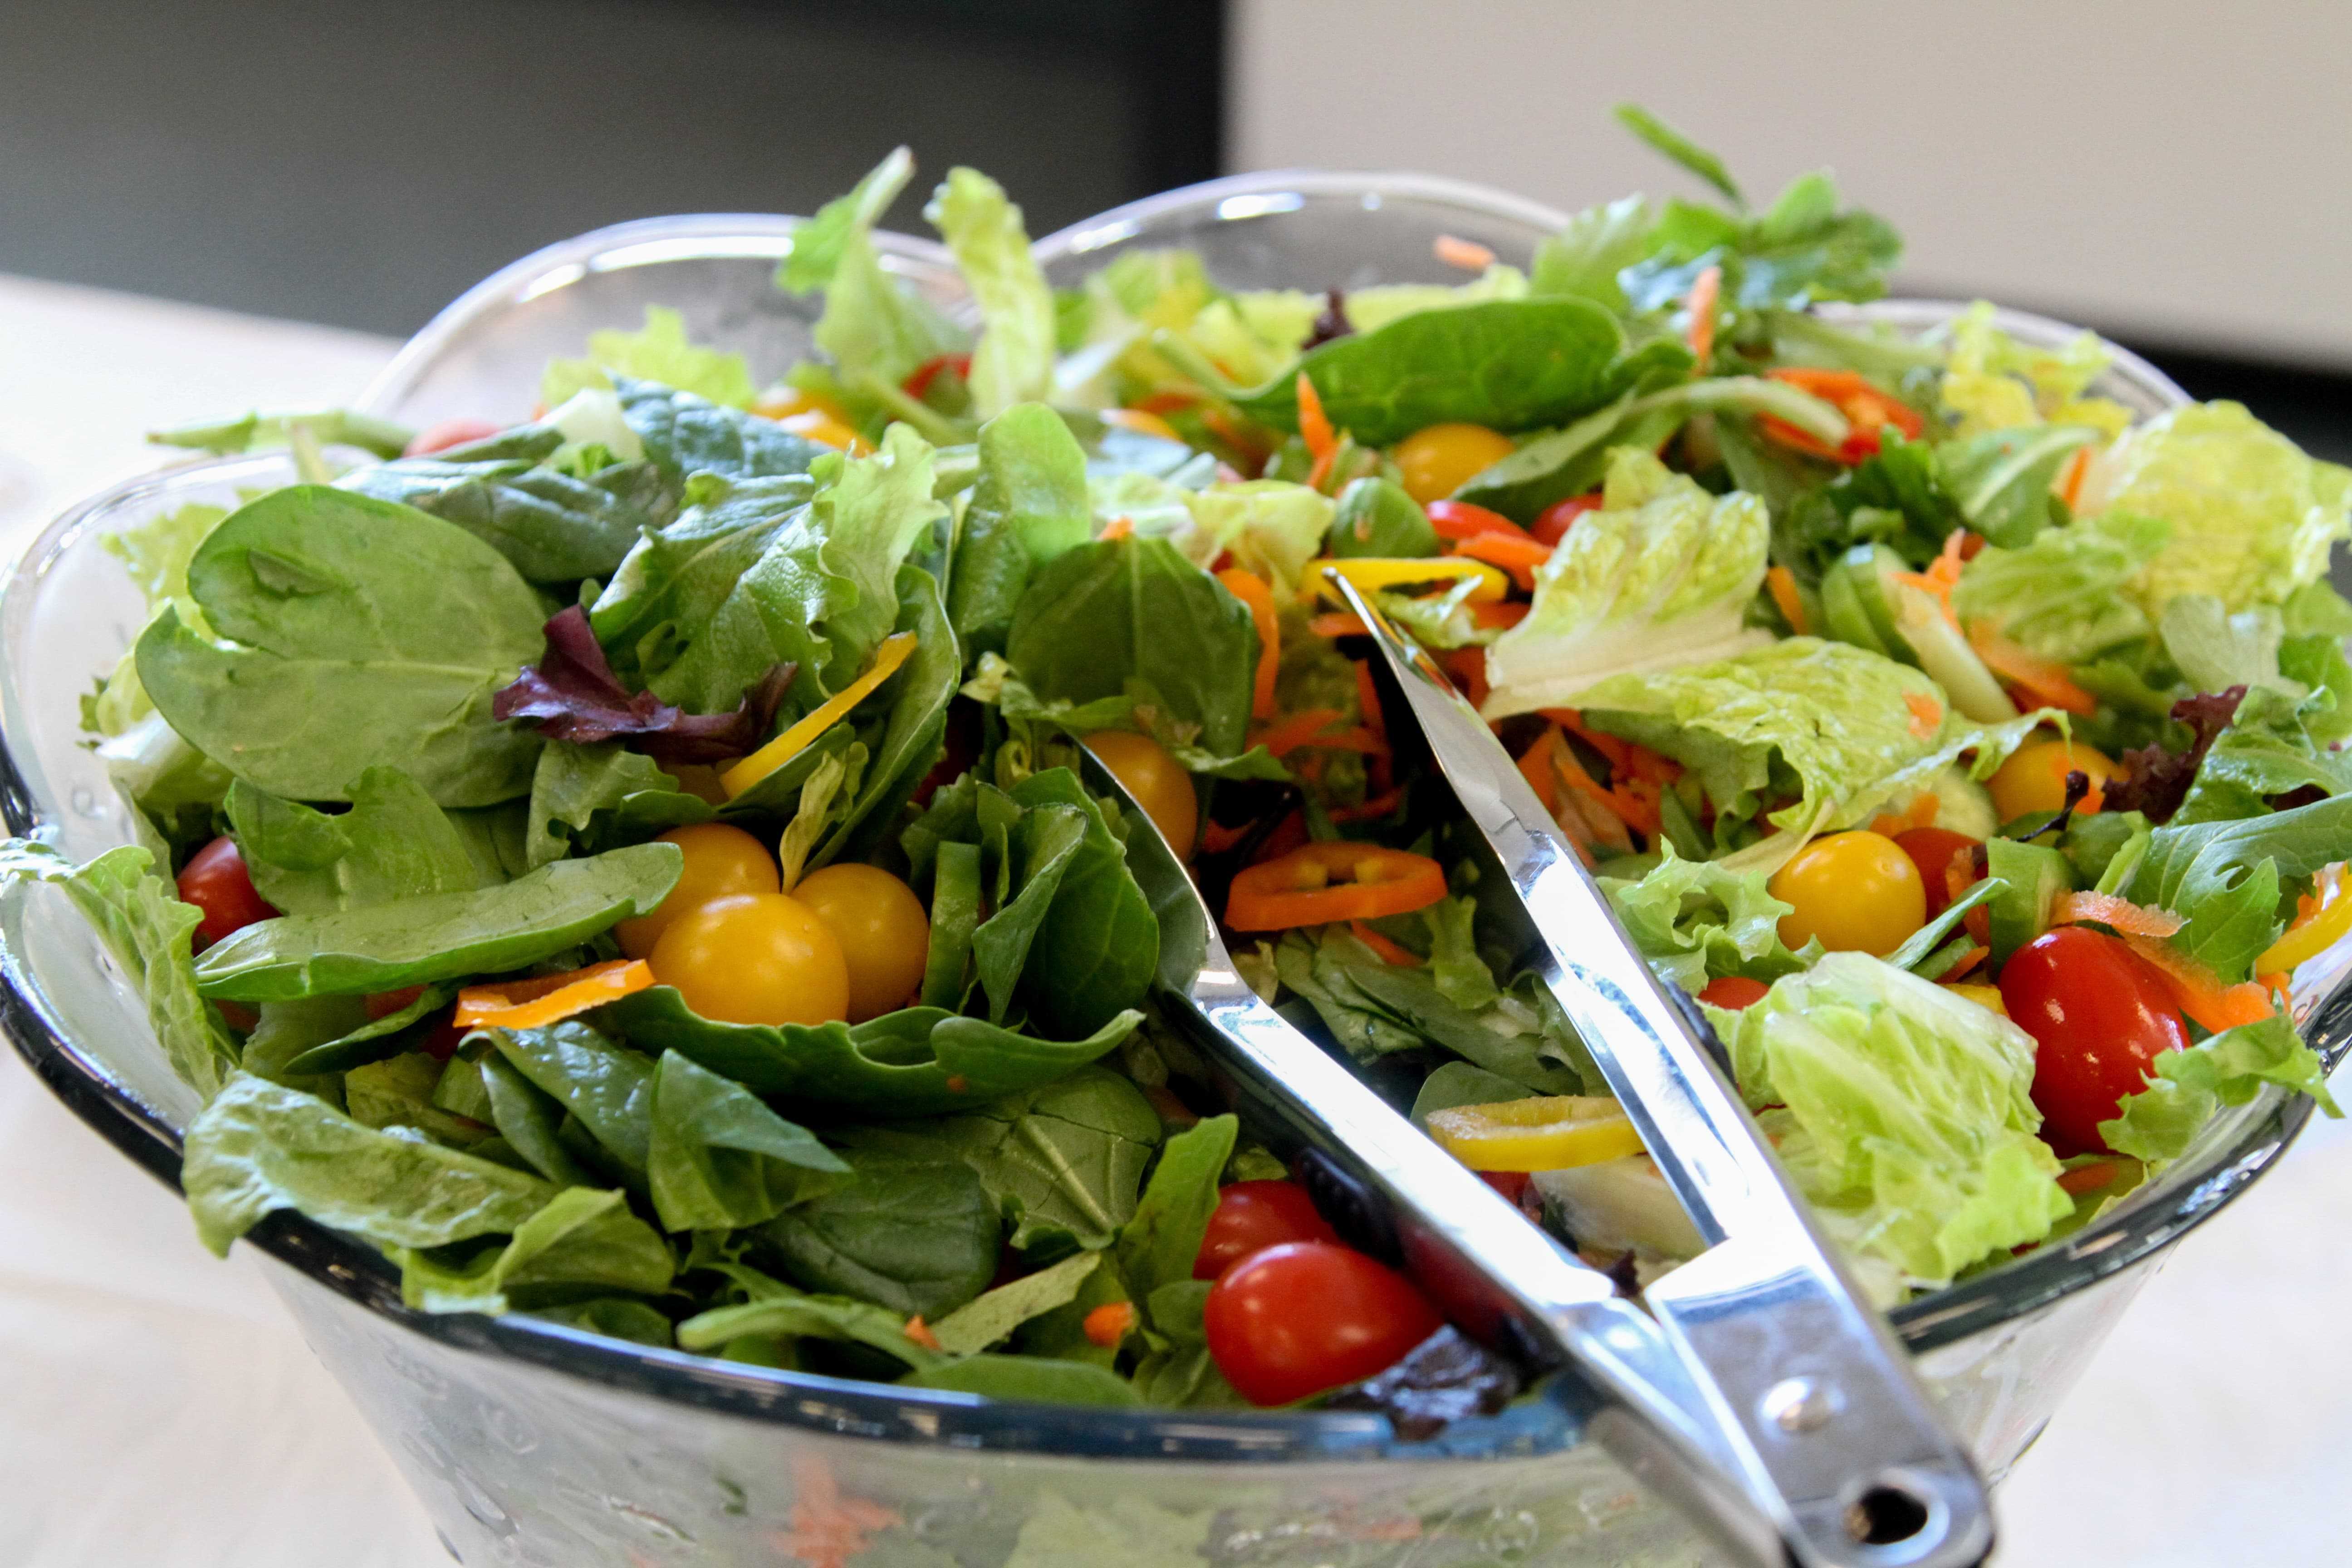 Фото овощной салат в тарелке